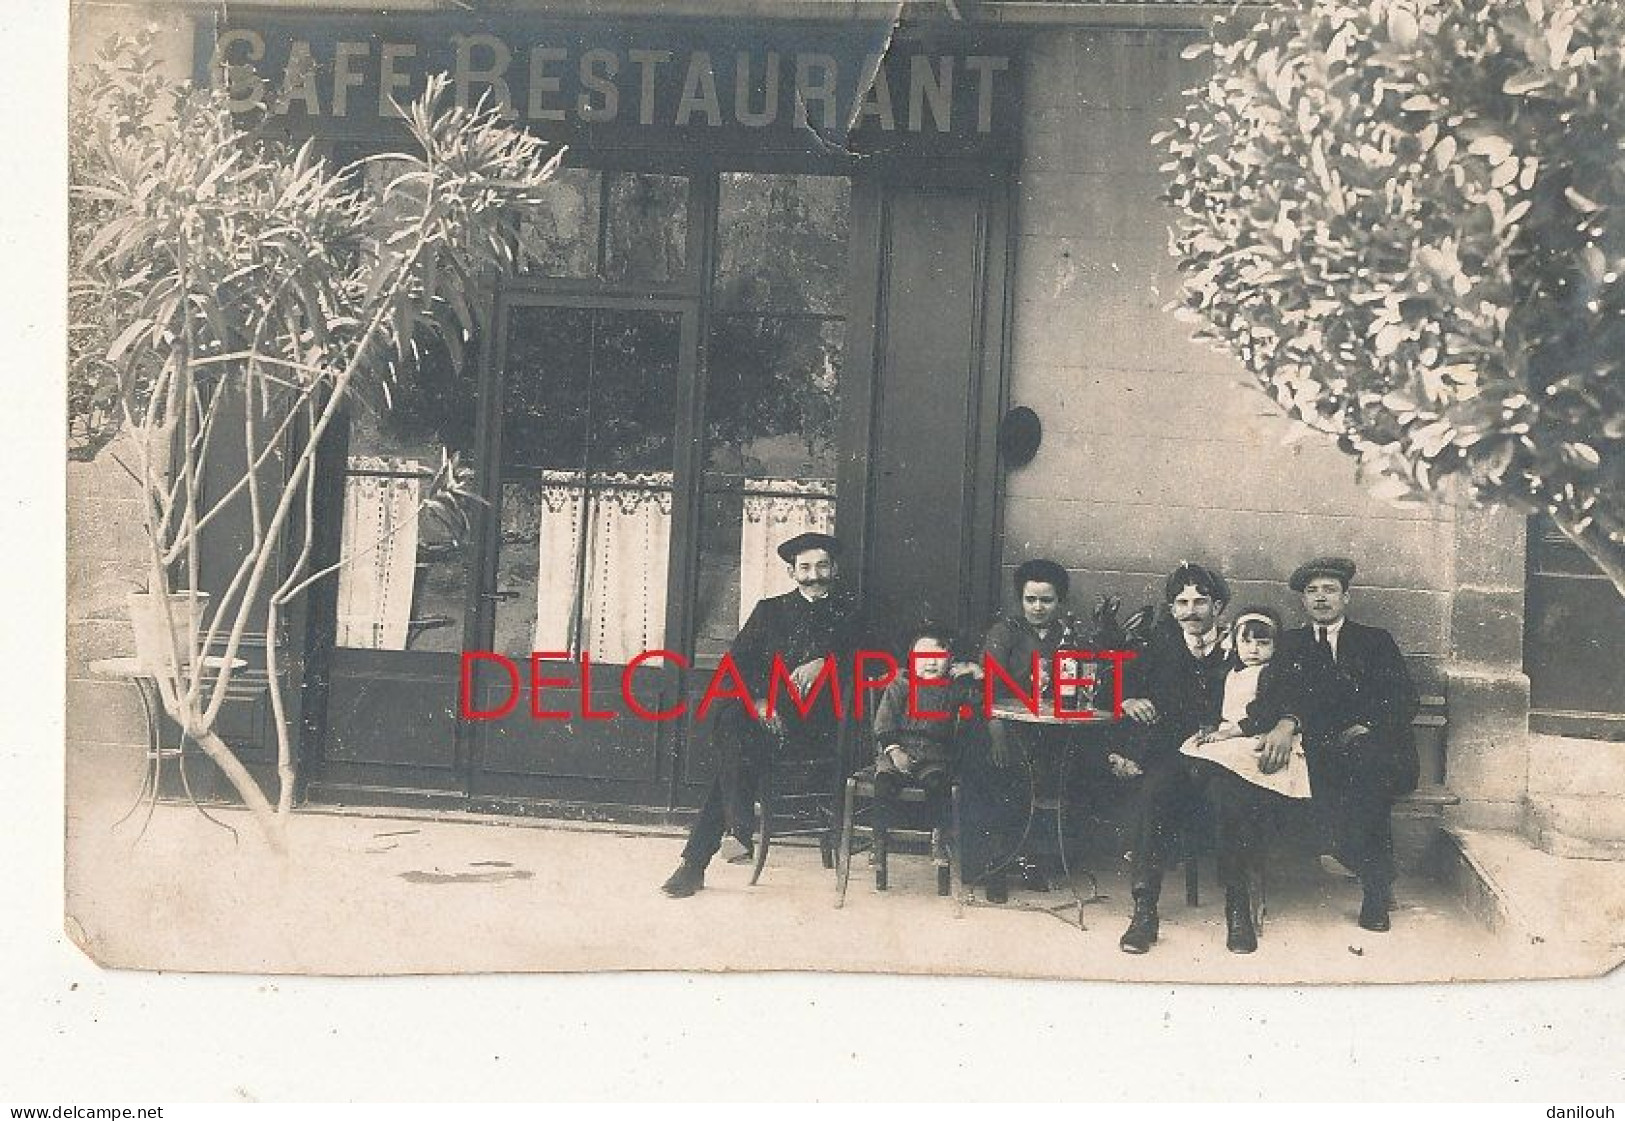 CARTE PHOTO / CAFE RESTAURANT   Devanture   Groupe Sur La Terrasse - Cafés